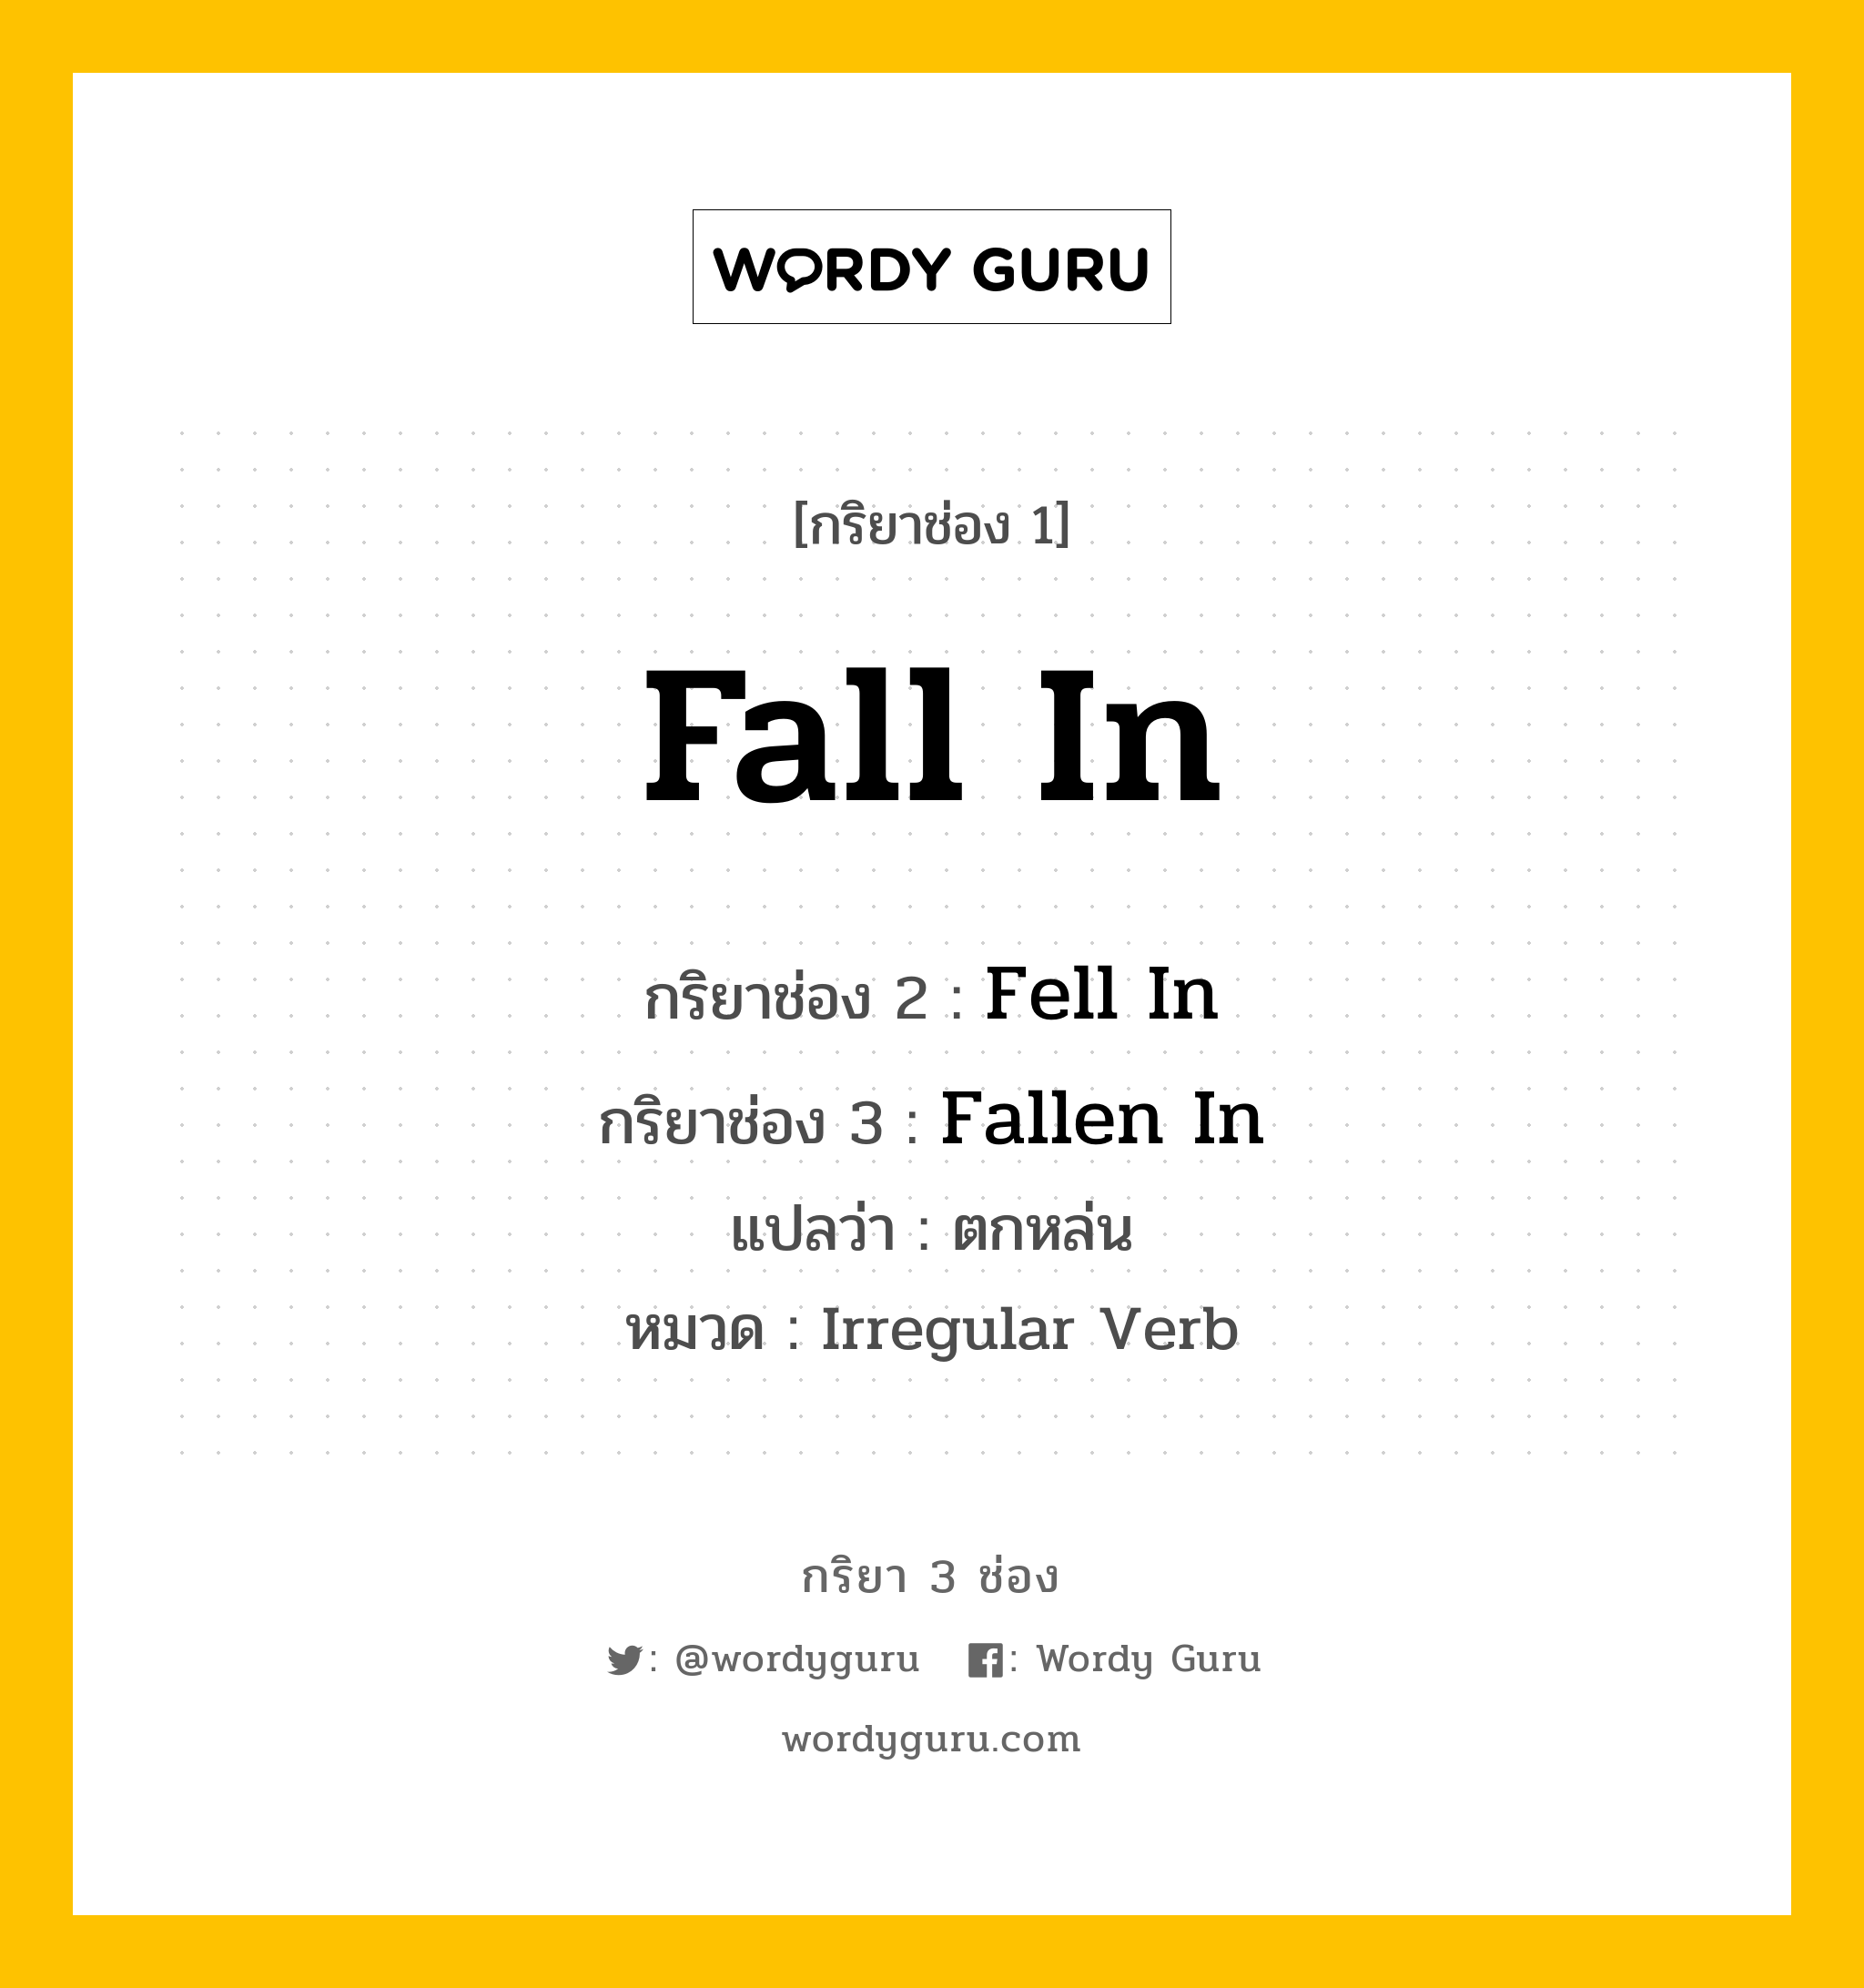 Fall In มีกริยา 3 ช่องอะไรบ้าง? คำศัพท์ในกลุ่มประเภท Irregular Verb, กริยาช่อง 1 Fall In กริยาช่อง 2 Fell In กริยาช่อง 3 Fallen In แปลว่า ตกหล่น หมวด Irregular Verb หมวด Irregular Verb